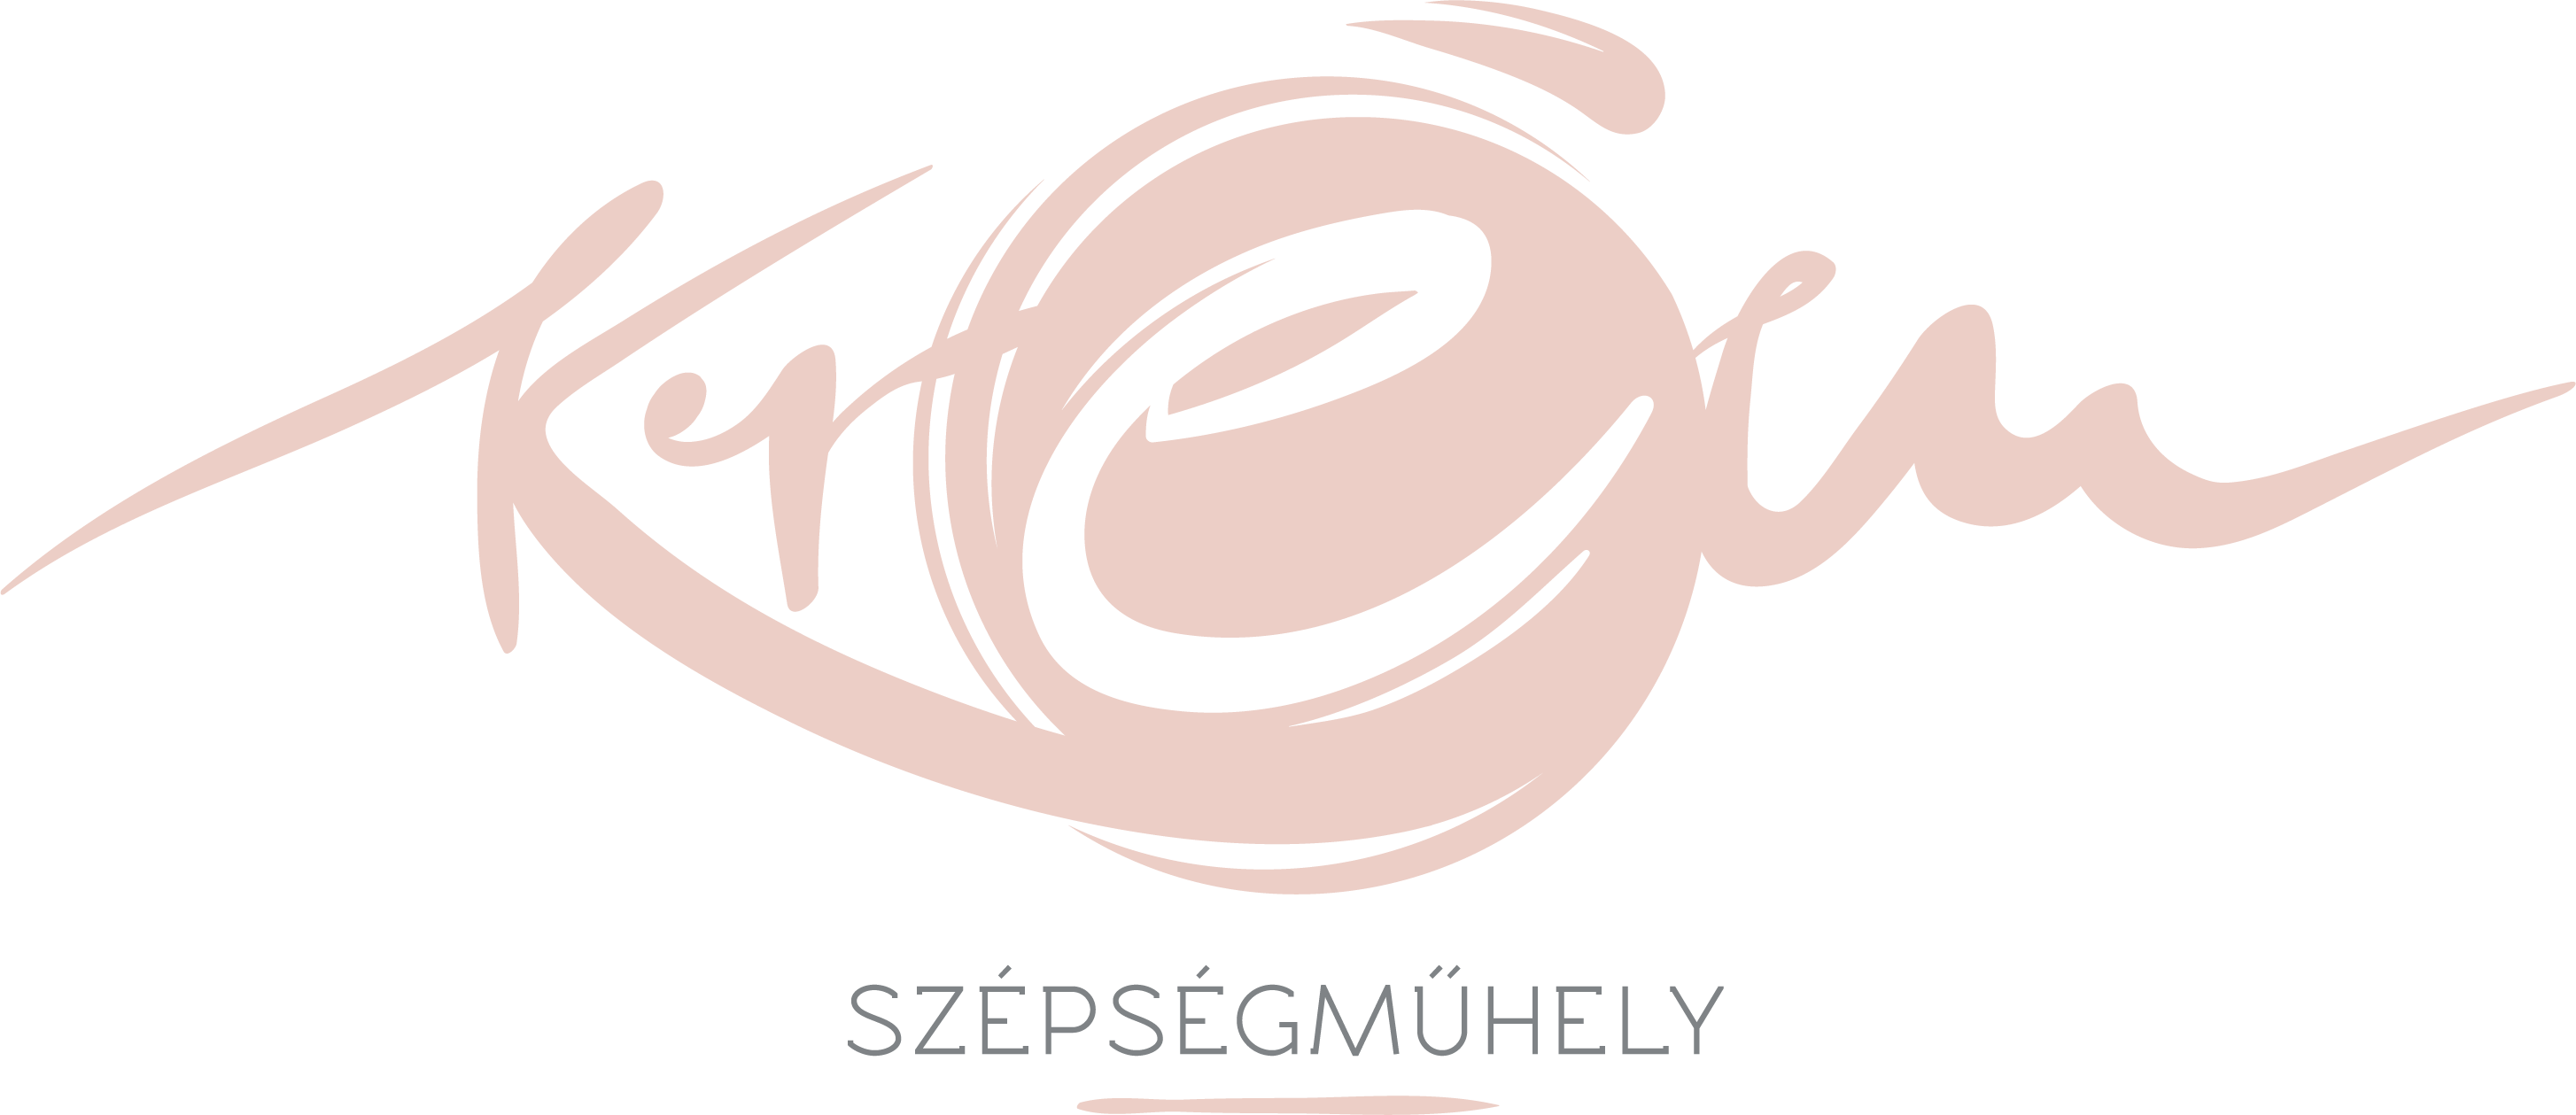 Krem_Logo